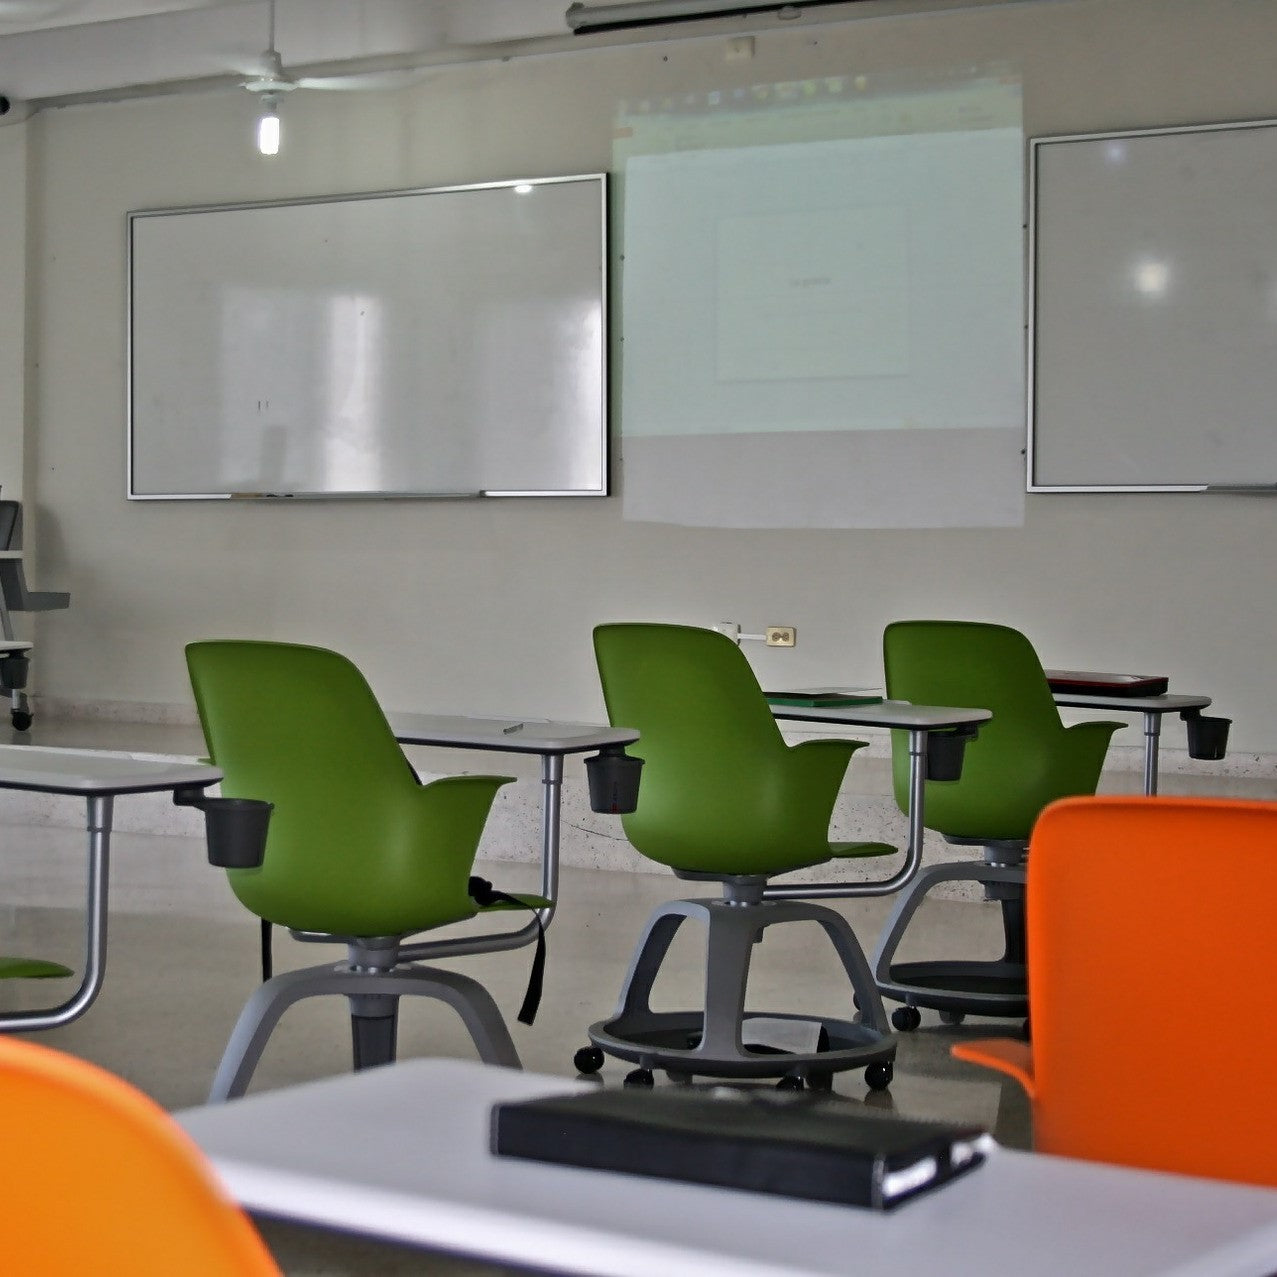 Education Projectors,  School Projectors, Classroom Projectors, AV Servicing and PA Tannoy Announcements